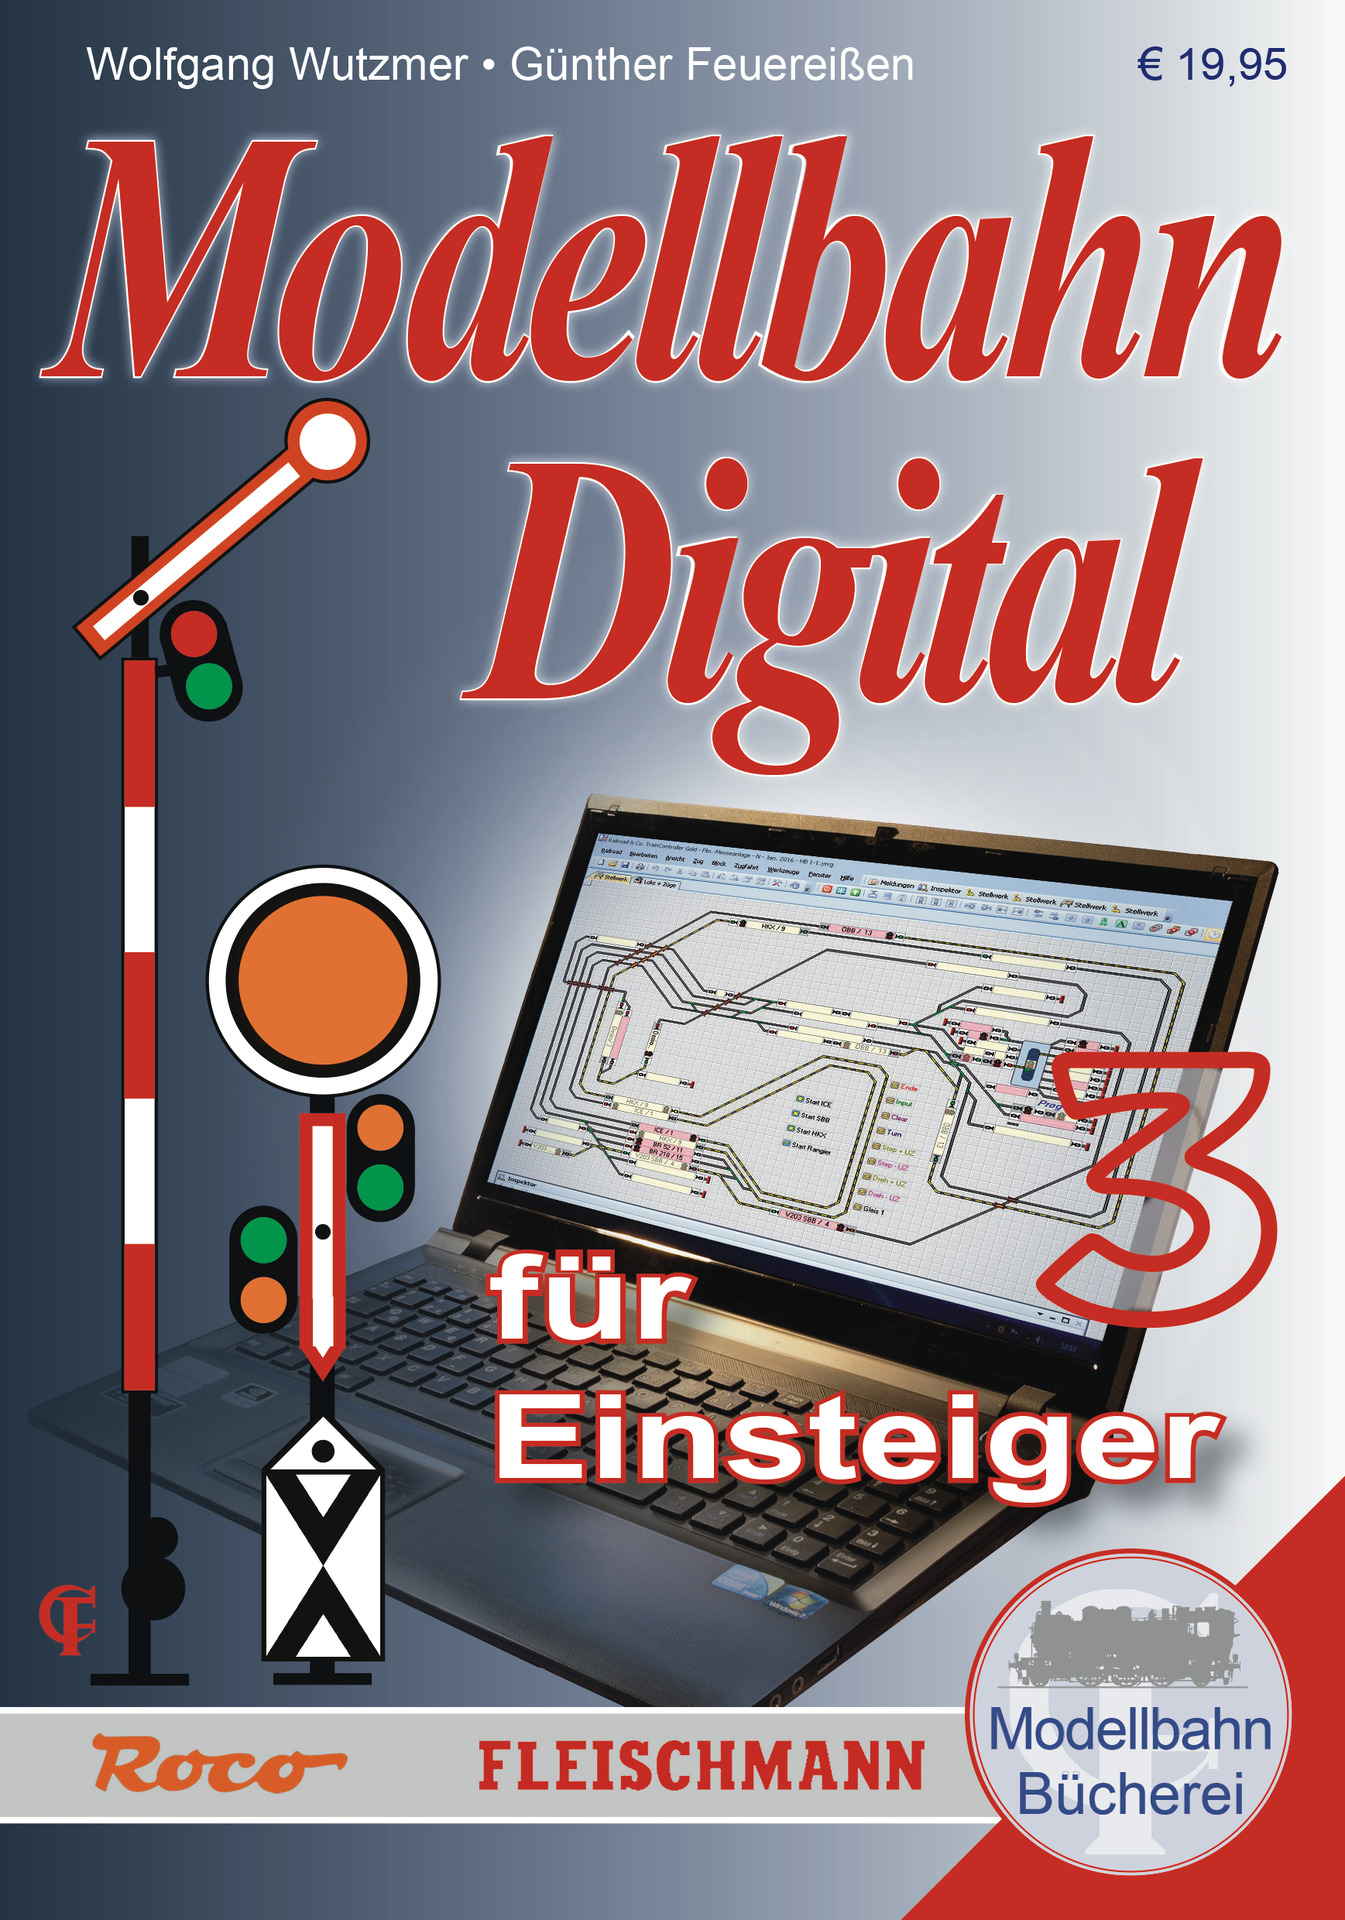 Modellbahn Digital für Einsteiger Roco 81393 Handbuch Band 3 Neuware 